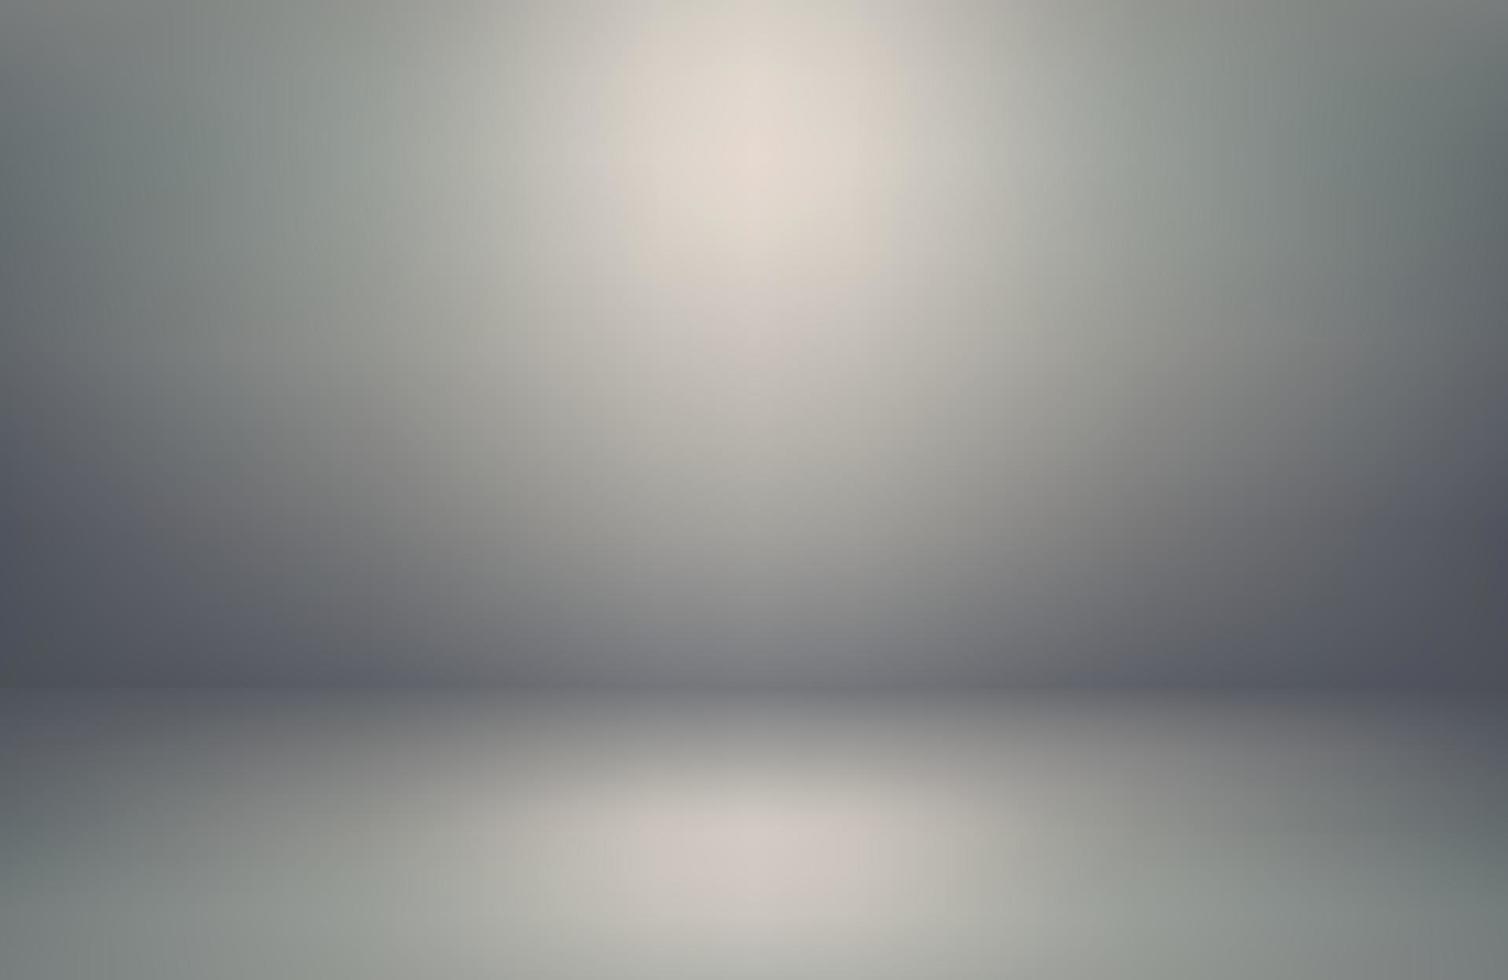 abstrato de fundo branco estúdio cinza. gradiente com vinheta de borda preta. sala de luz vazia. design limpo para exibir o produto. ilustração em vetor 3D.